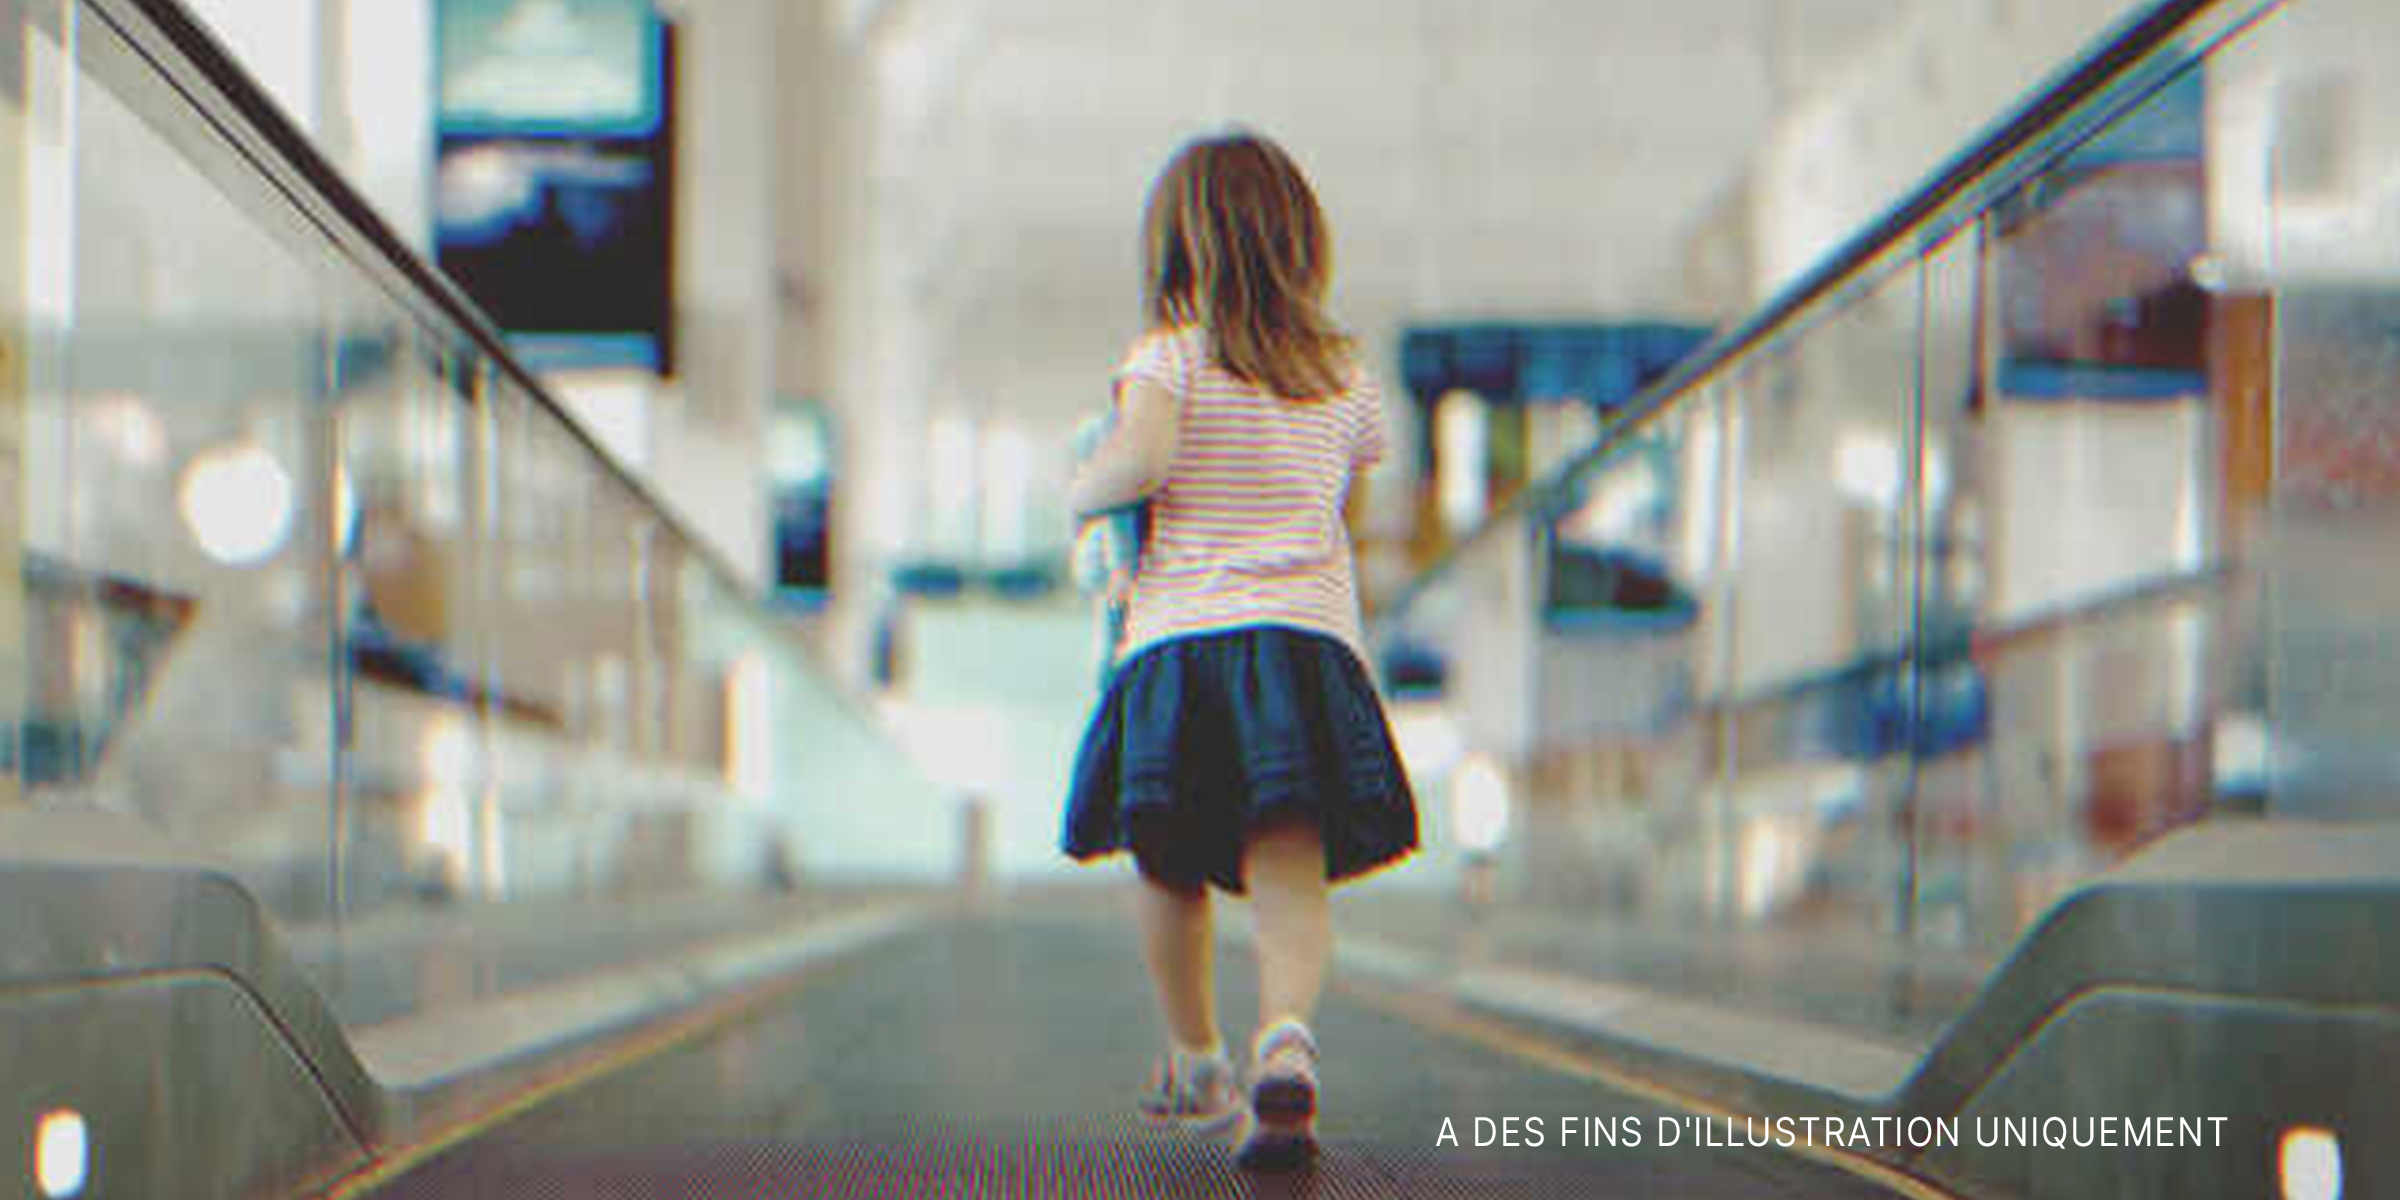 Une petite fille perdue dans un aéroport | Source : Shutterstock.com